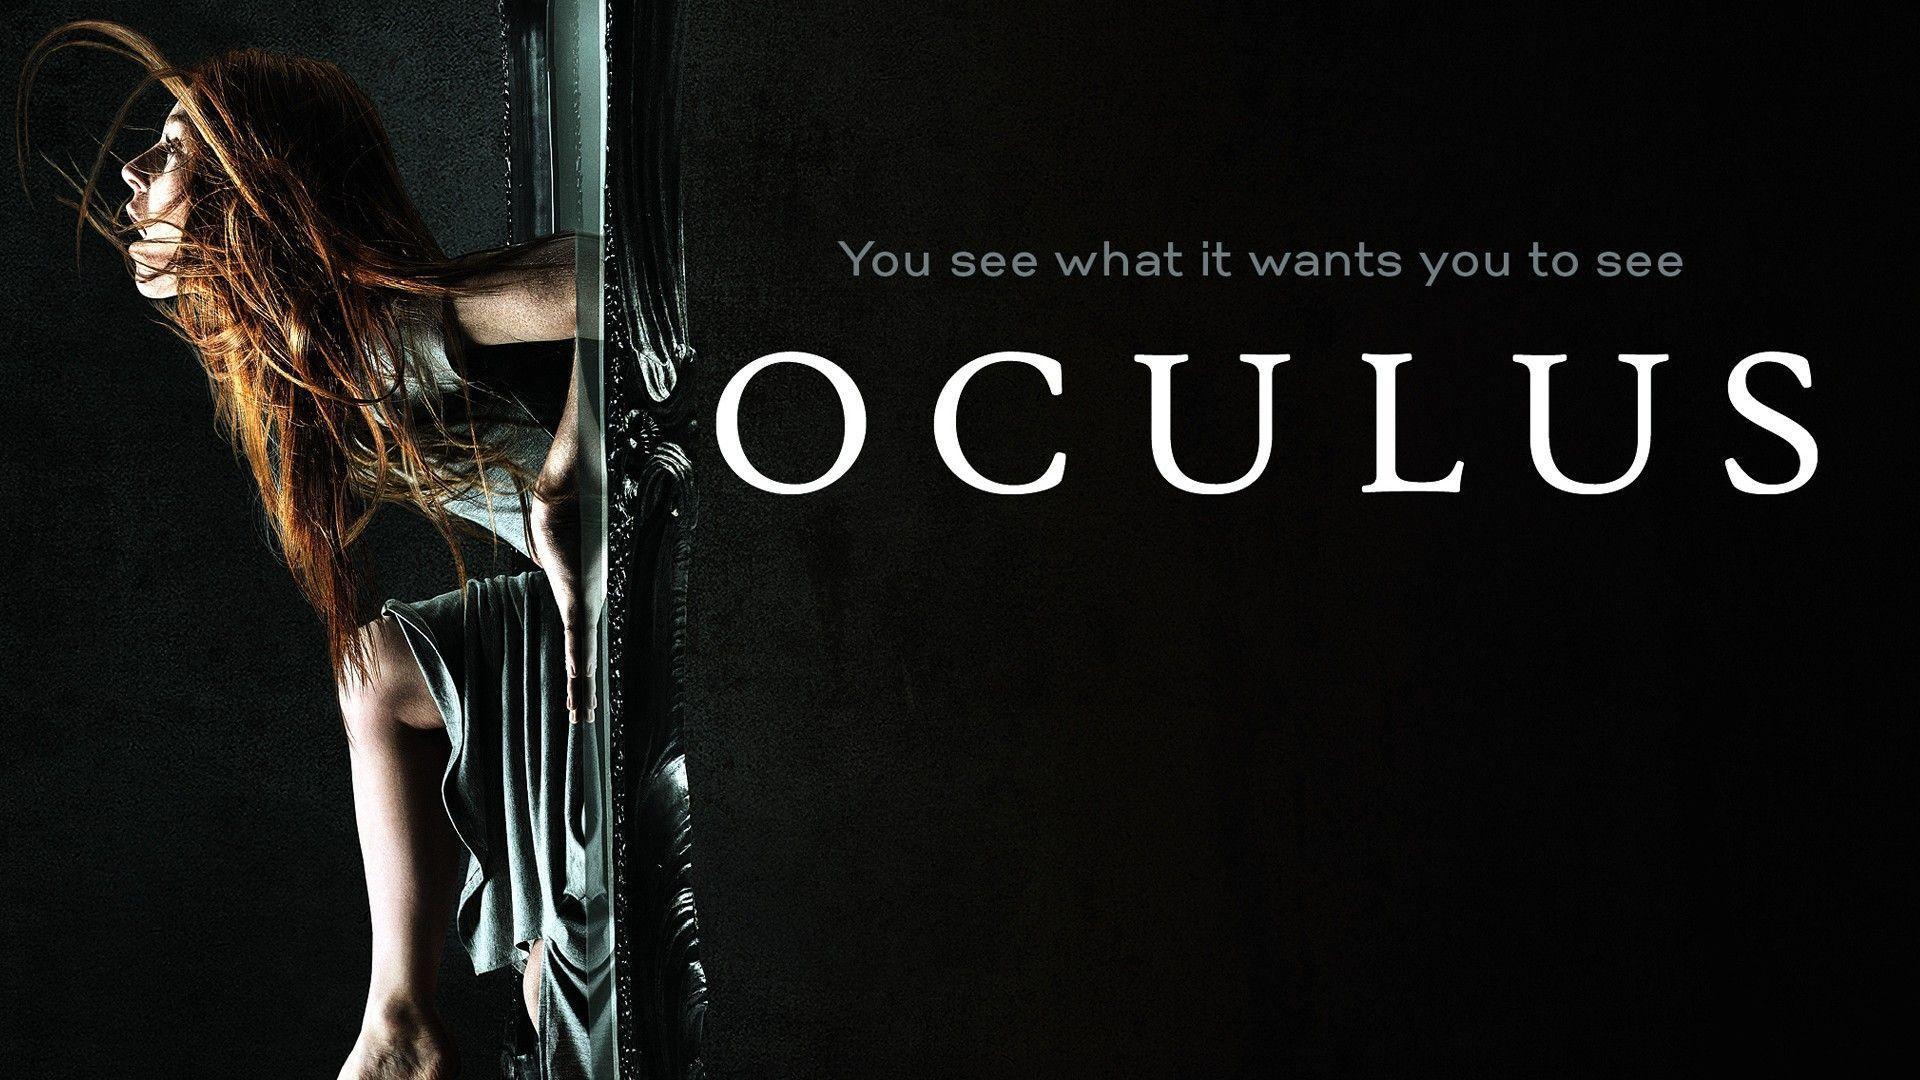 New Oculus 2014 Horror Movie Poster Wallpaper HD for Desktop